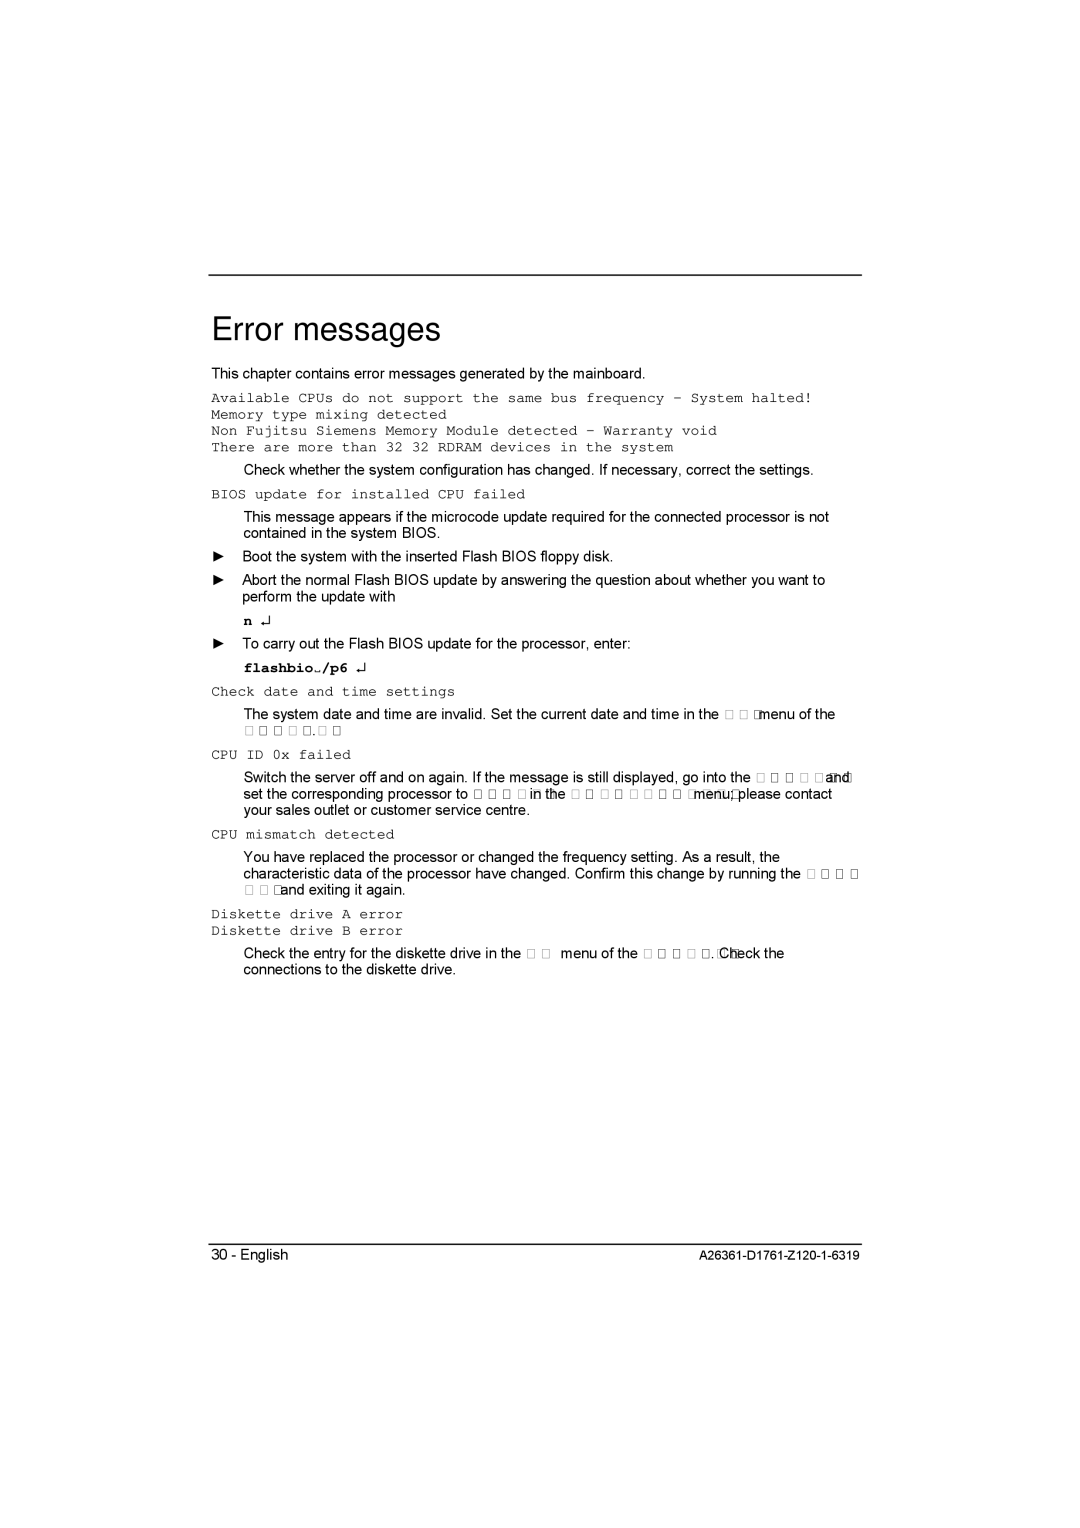 Neumann.Berlin D1761 manual Error messages, Bios update for installed CPU failed 